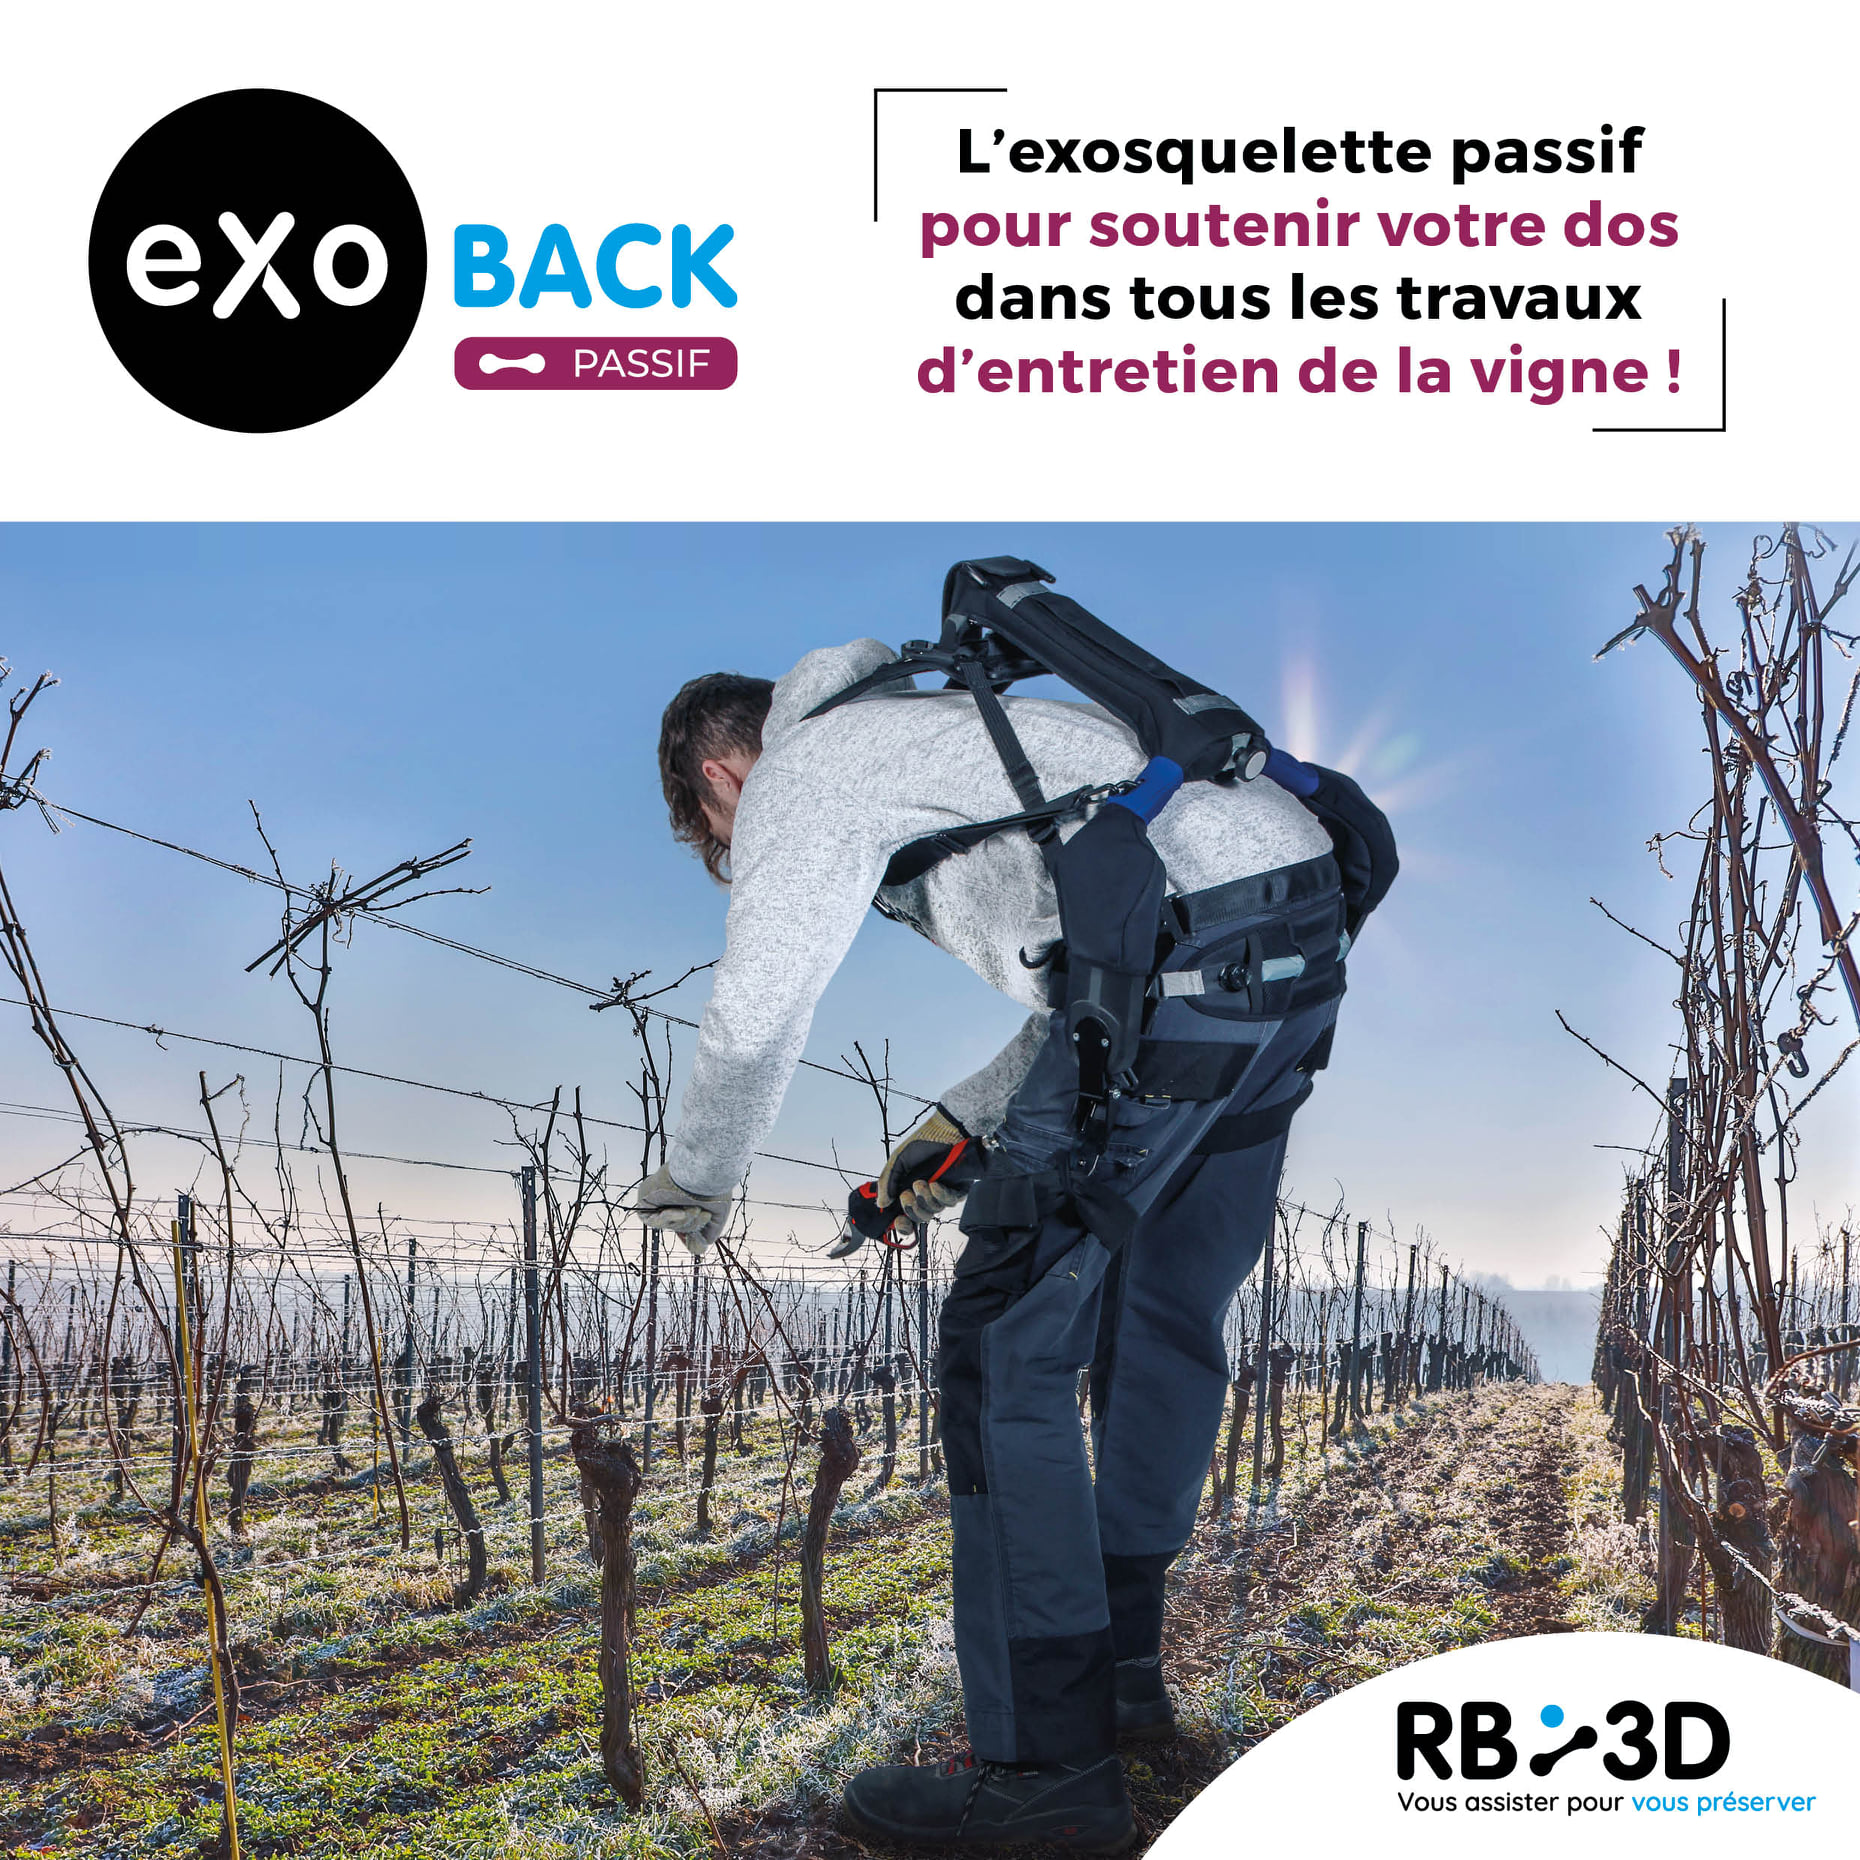 Notre exosquelette passif pour soulager le dos des ouvriers viticoles